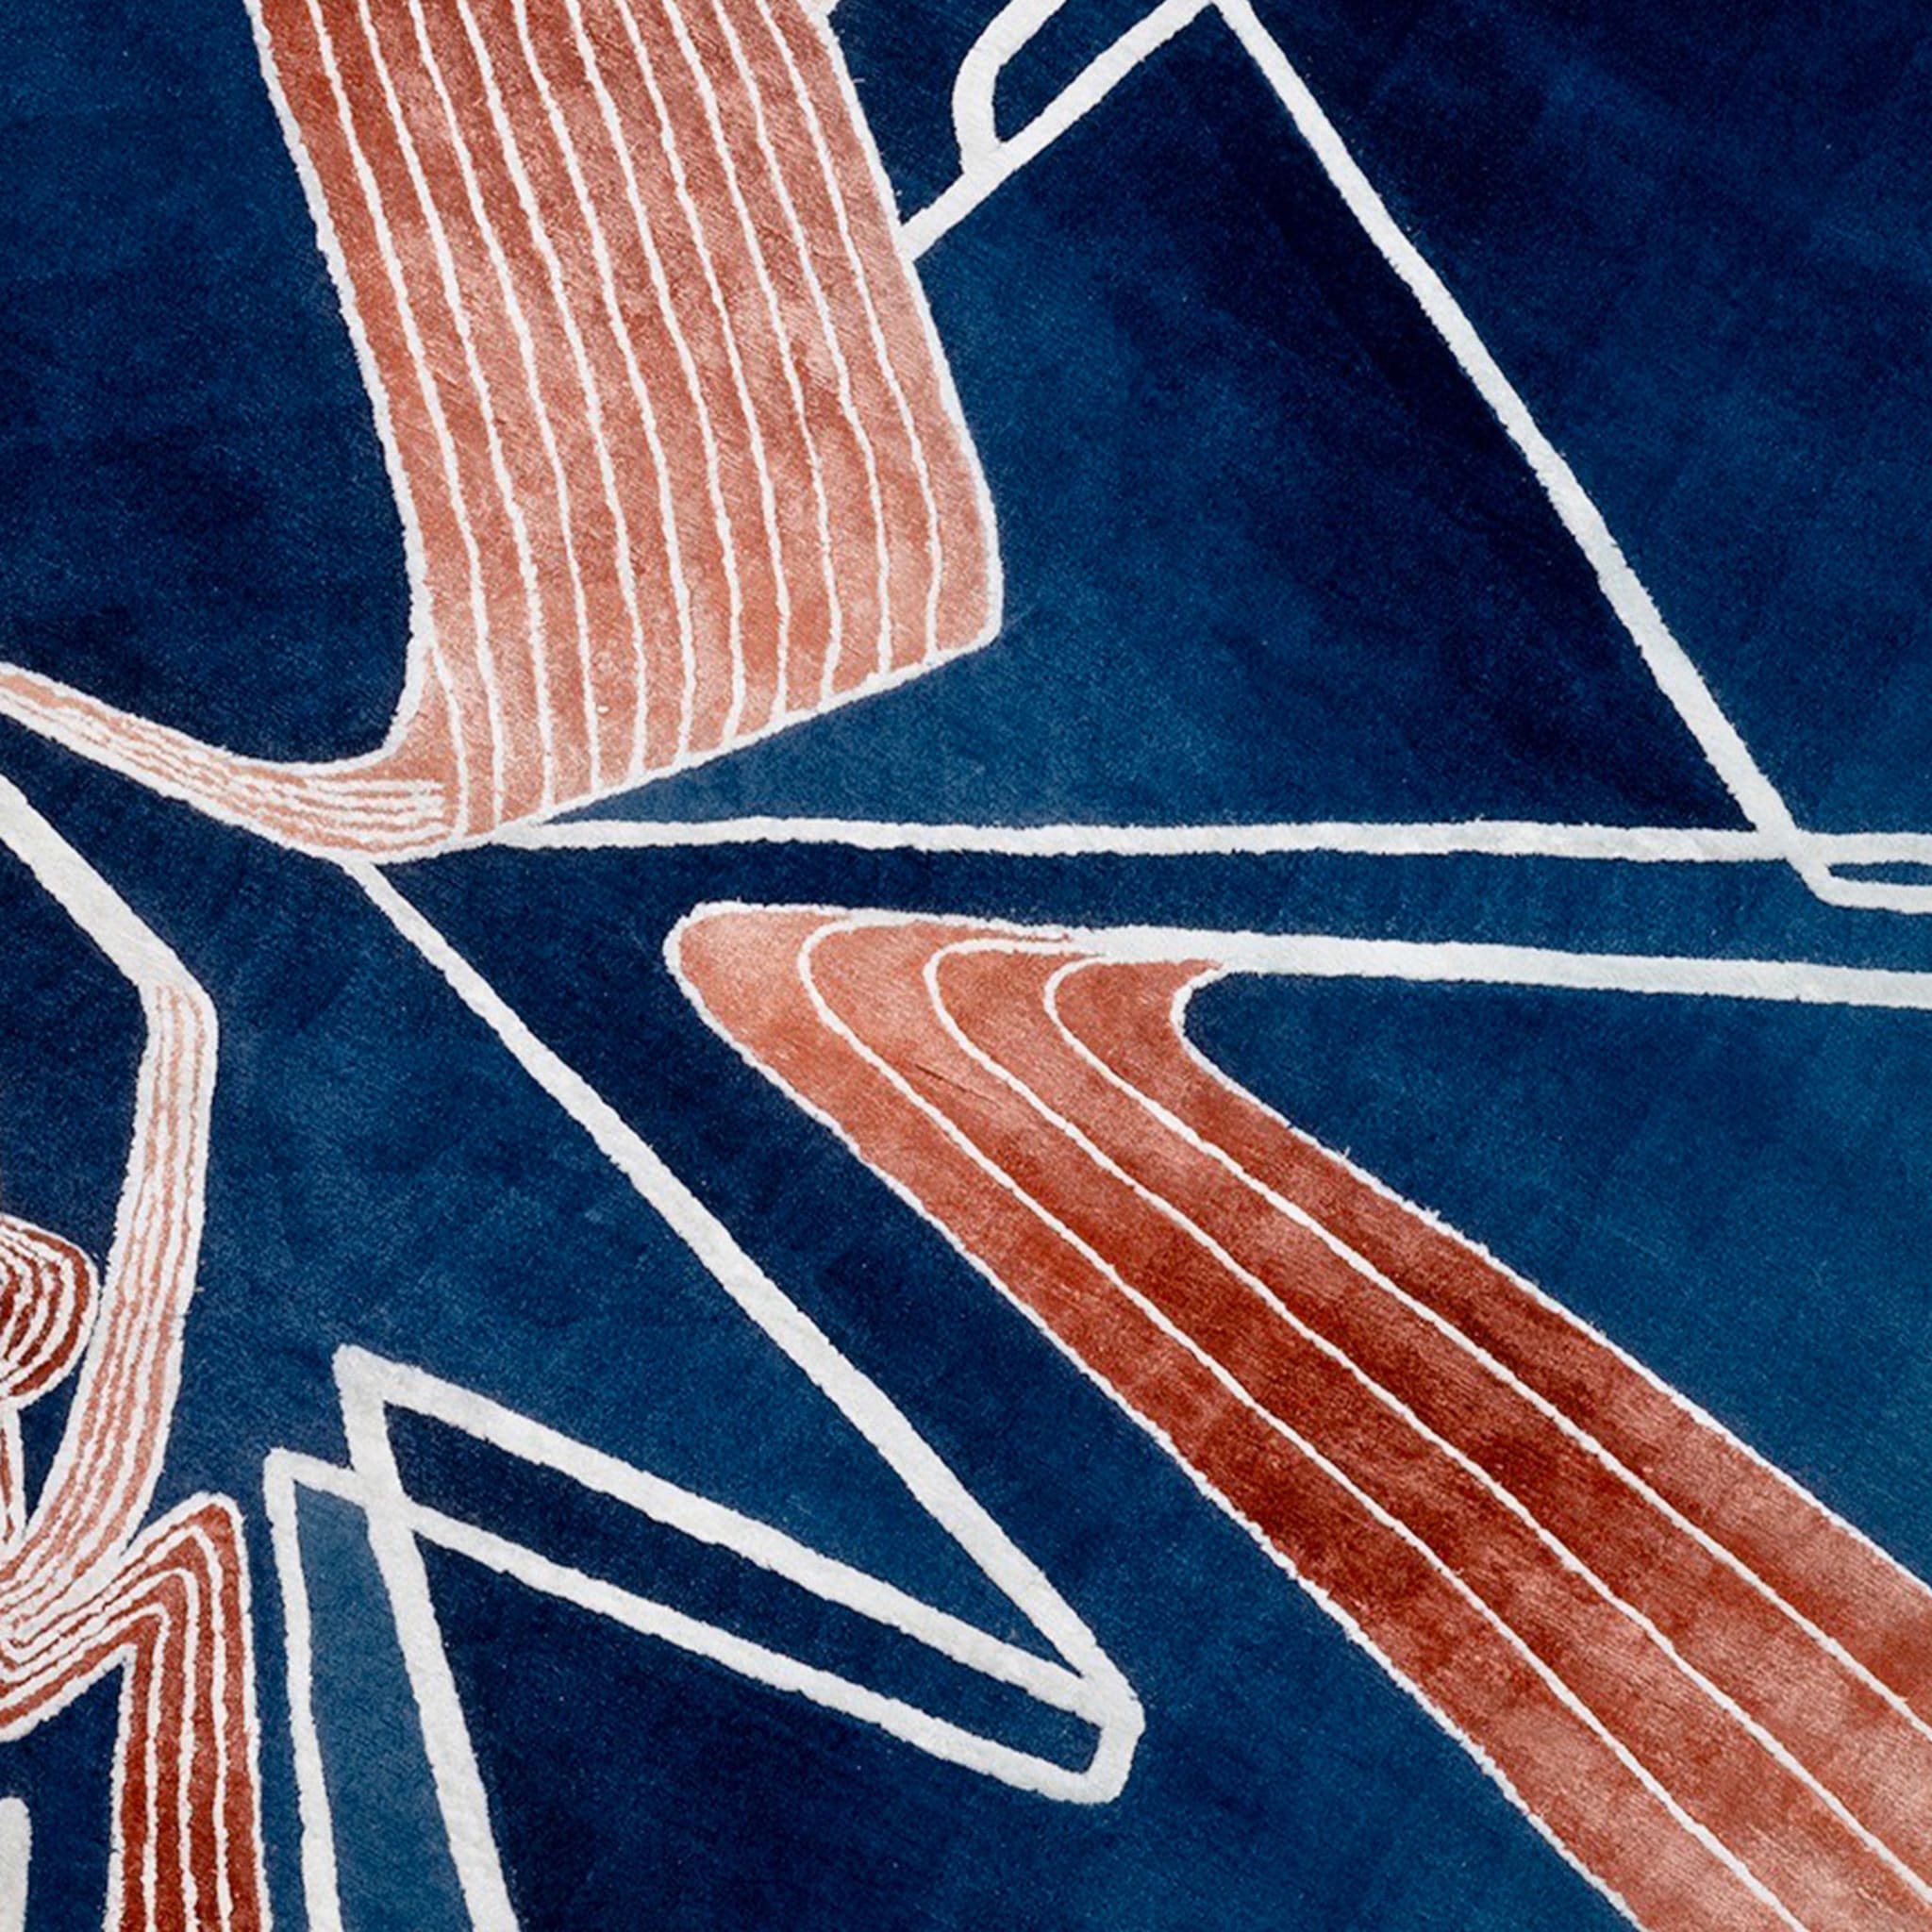 Prospettiva 01 Ver. Un tappeto di Zaha Hadid Architects - Vista alternativa 2